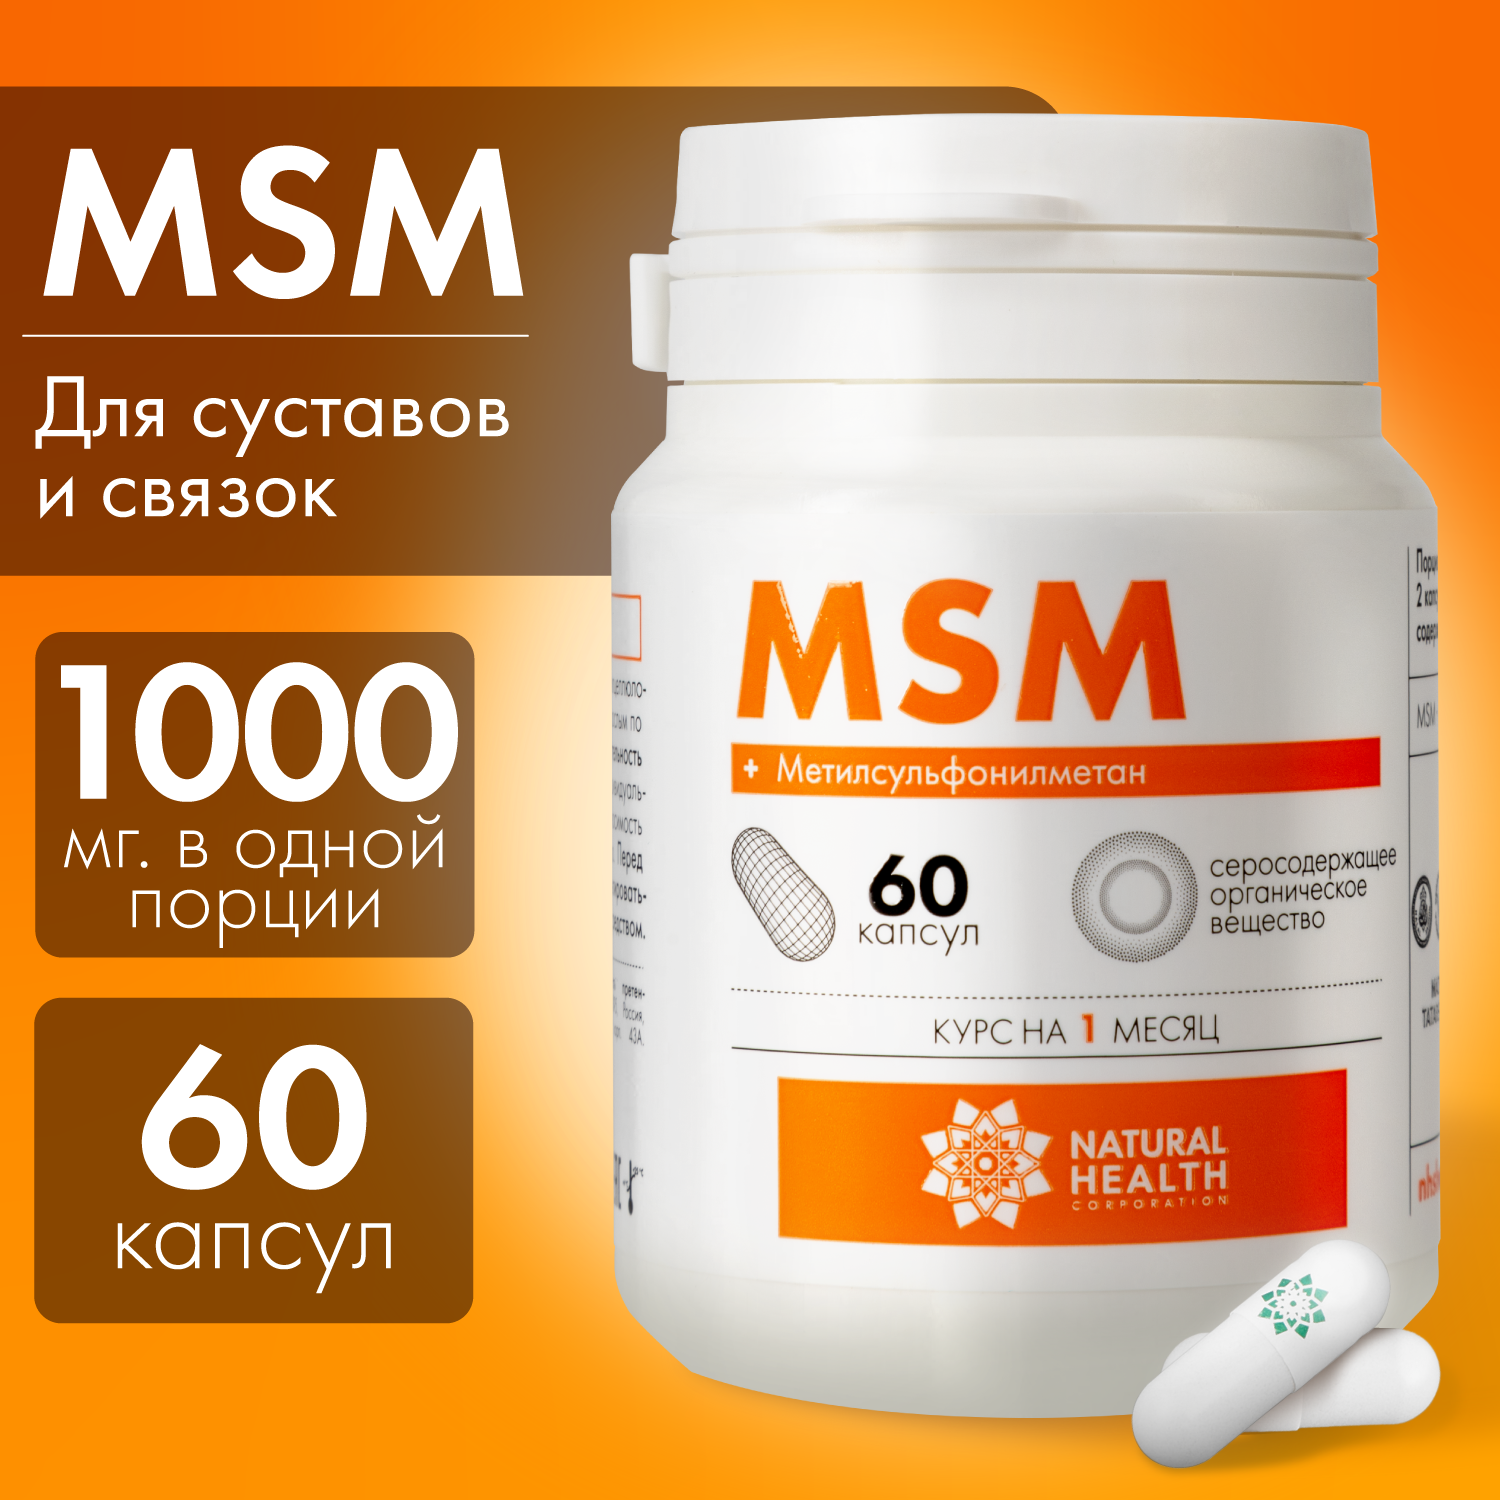 MSM - витамин для суставов, хрящей, связок; метилсульфонилметан - серосодержащее вещество, 1000 мг, 60 капсул, Natural Health, Натуральное Здоровье